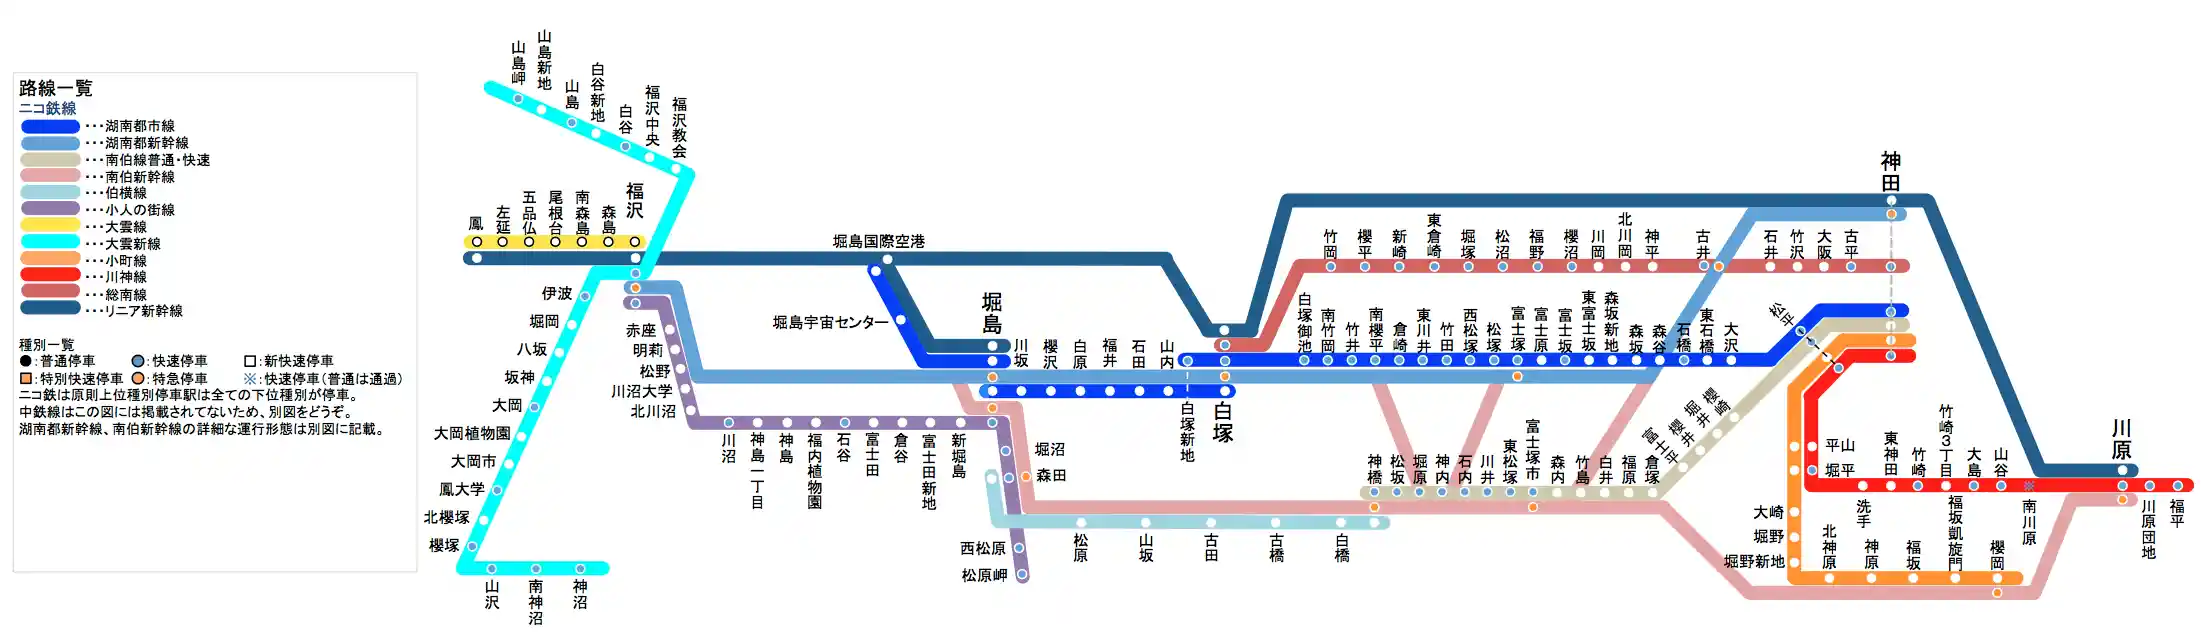 ニコ鉄路線図1025.png